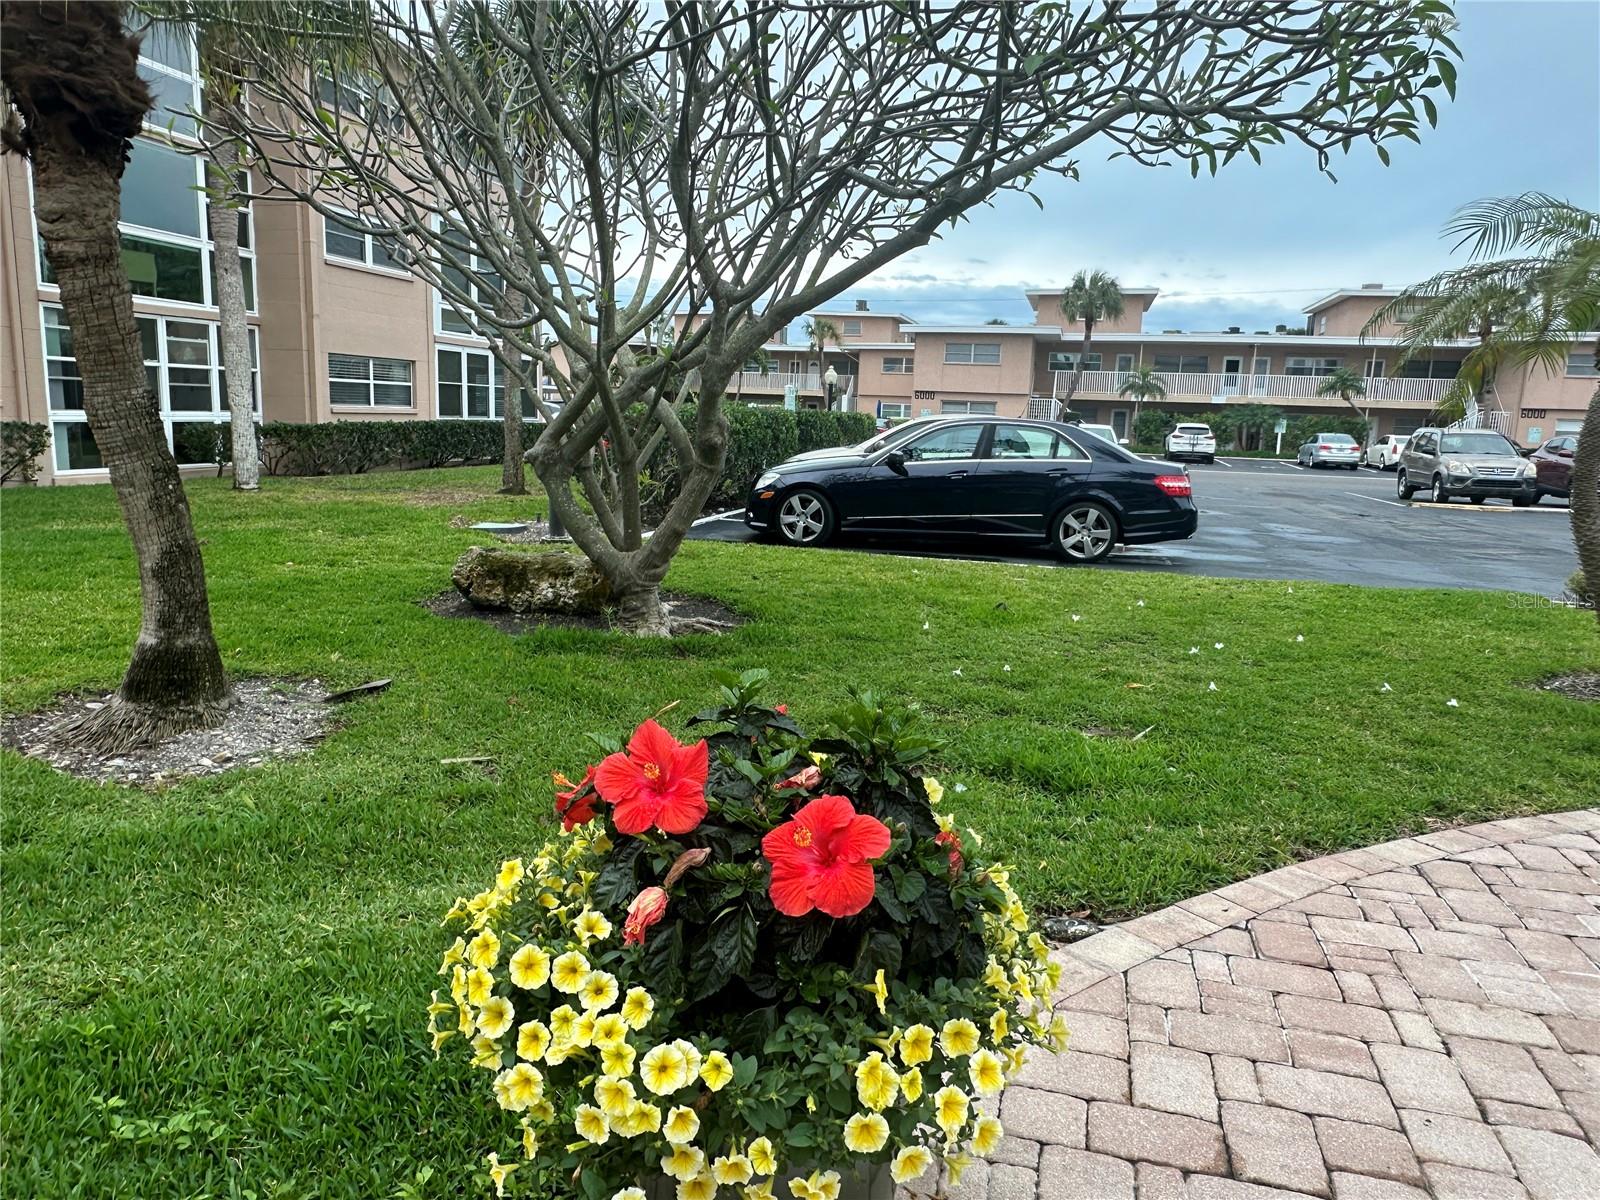 Parking spot, first spot behind the flowers.